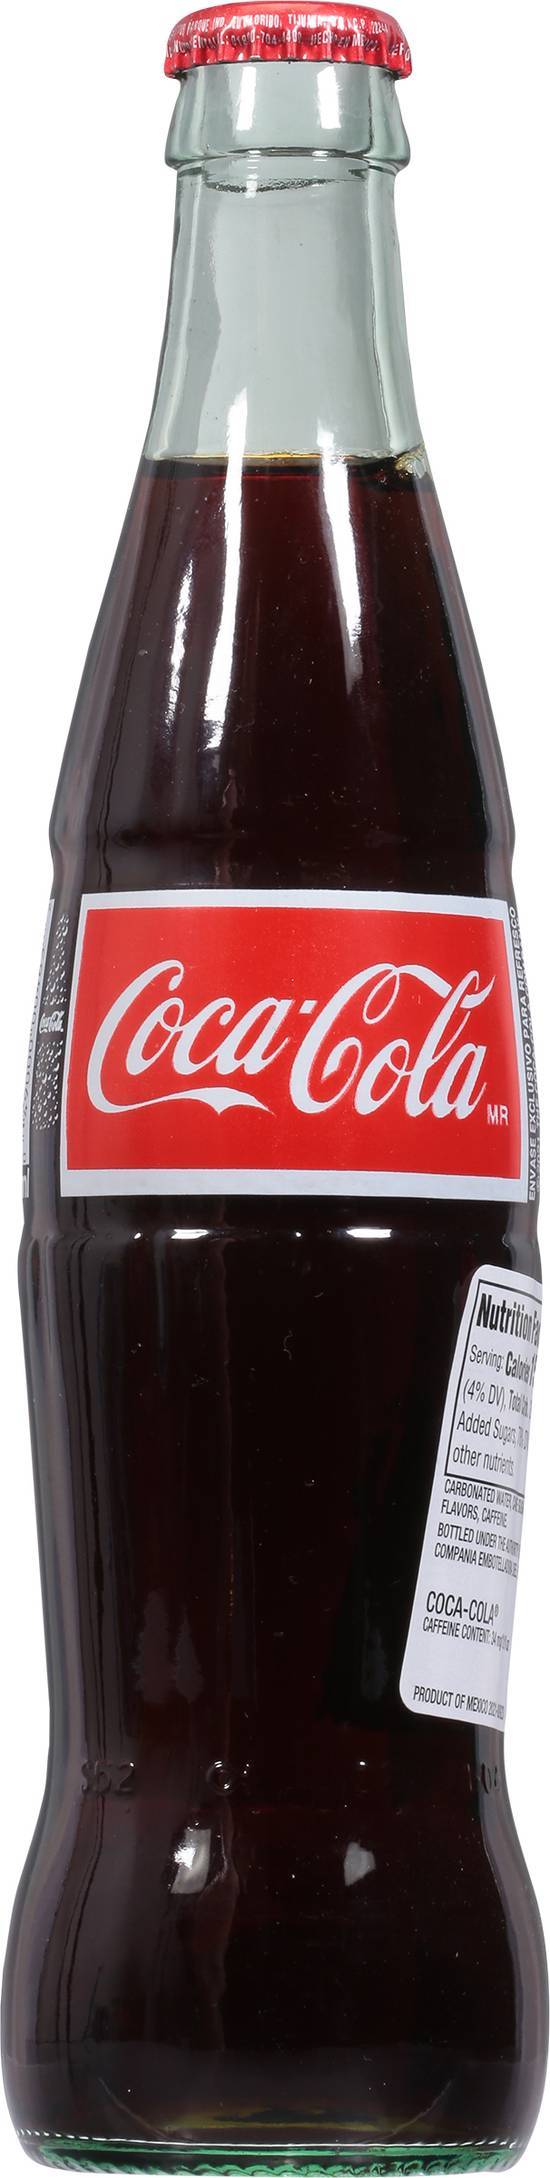 Coca-Cola Mexico Glass Bottle Soda (355 ml)